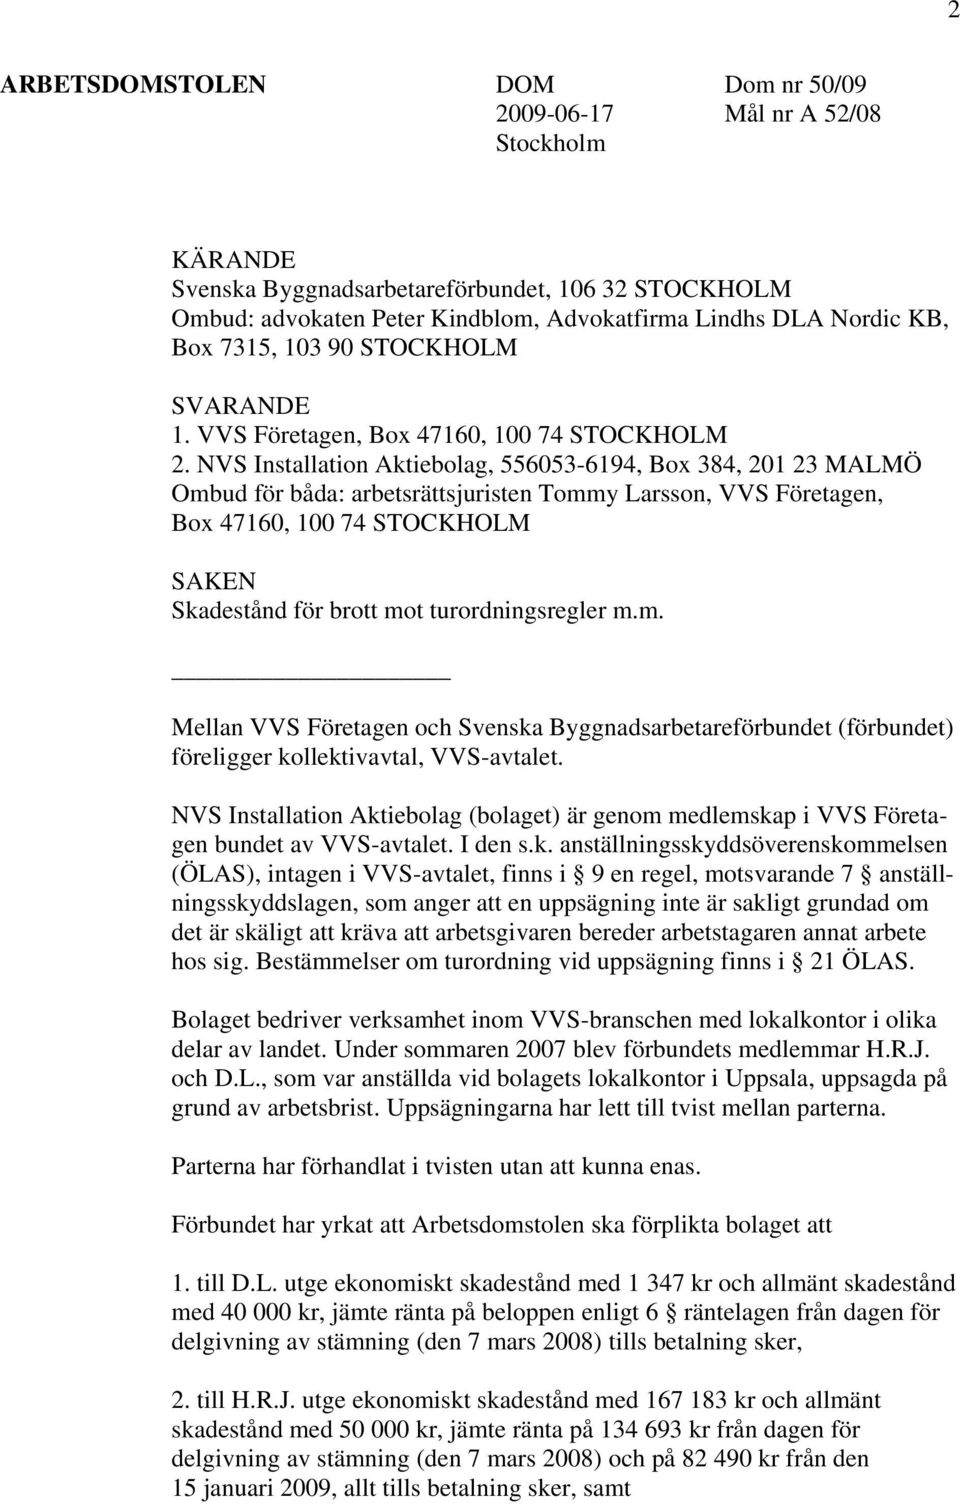 NVS Installation Aktiebolag, 556053-6194, Box 384, 201 23 MALMÖ Ombud för båda: arbetsrättsjuristen Tommy Larsson, VVS Företagen, Box 47160, 100 74 STOCKHOLM SAKEN Skadestånd för brott mot